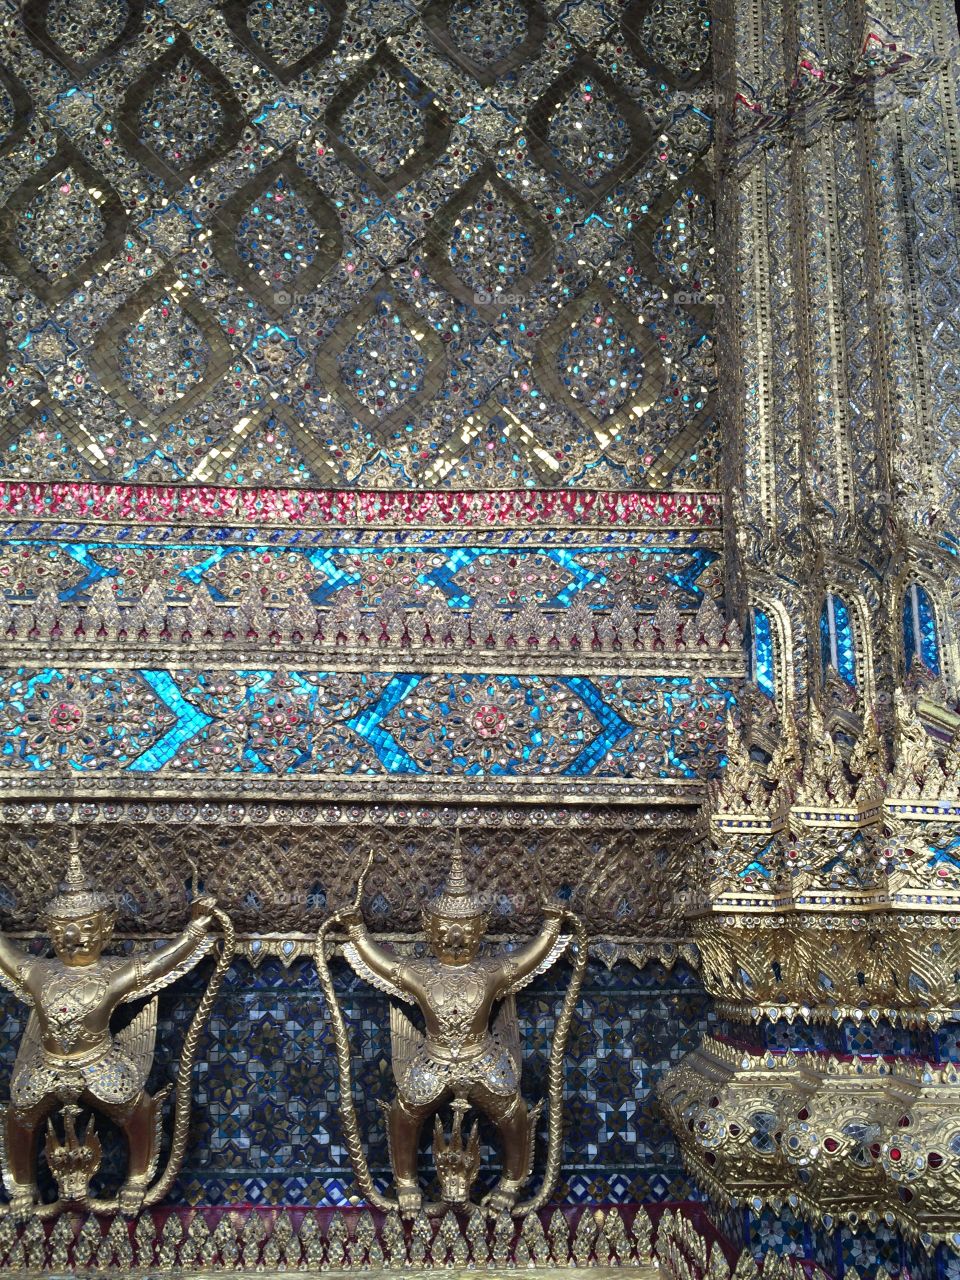 Bangkok, Thailand: Mosaic wall of the Grand Palace with gold Buddhas and jewel mosaic wall